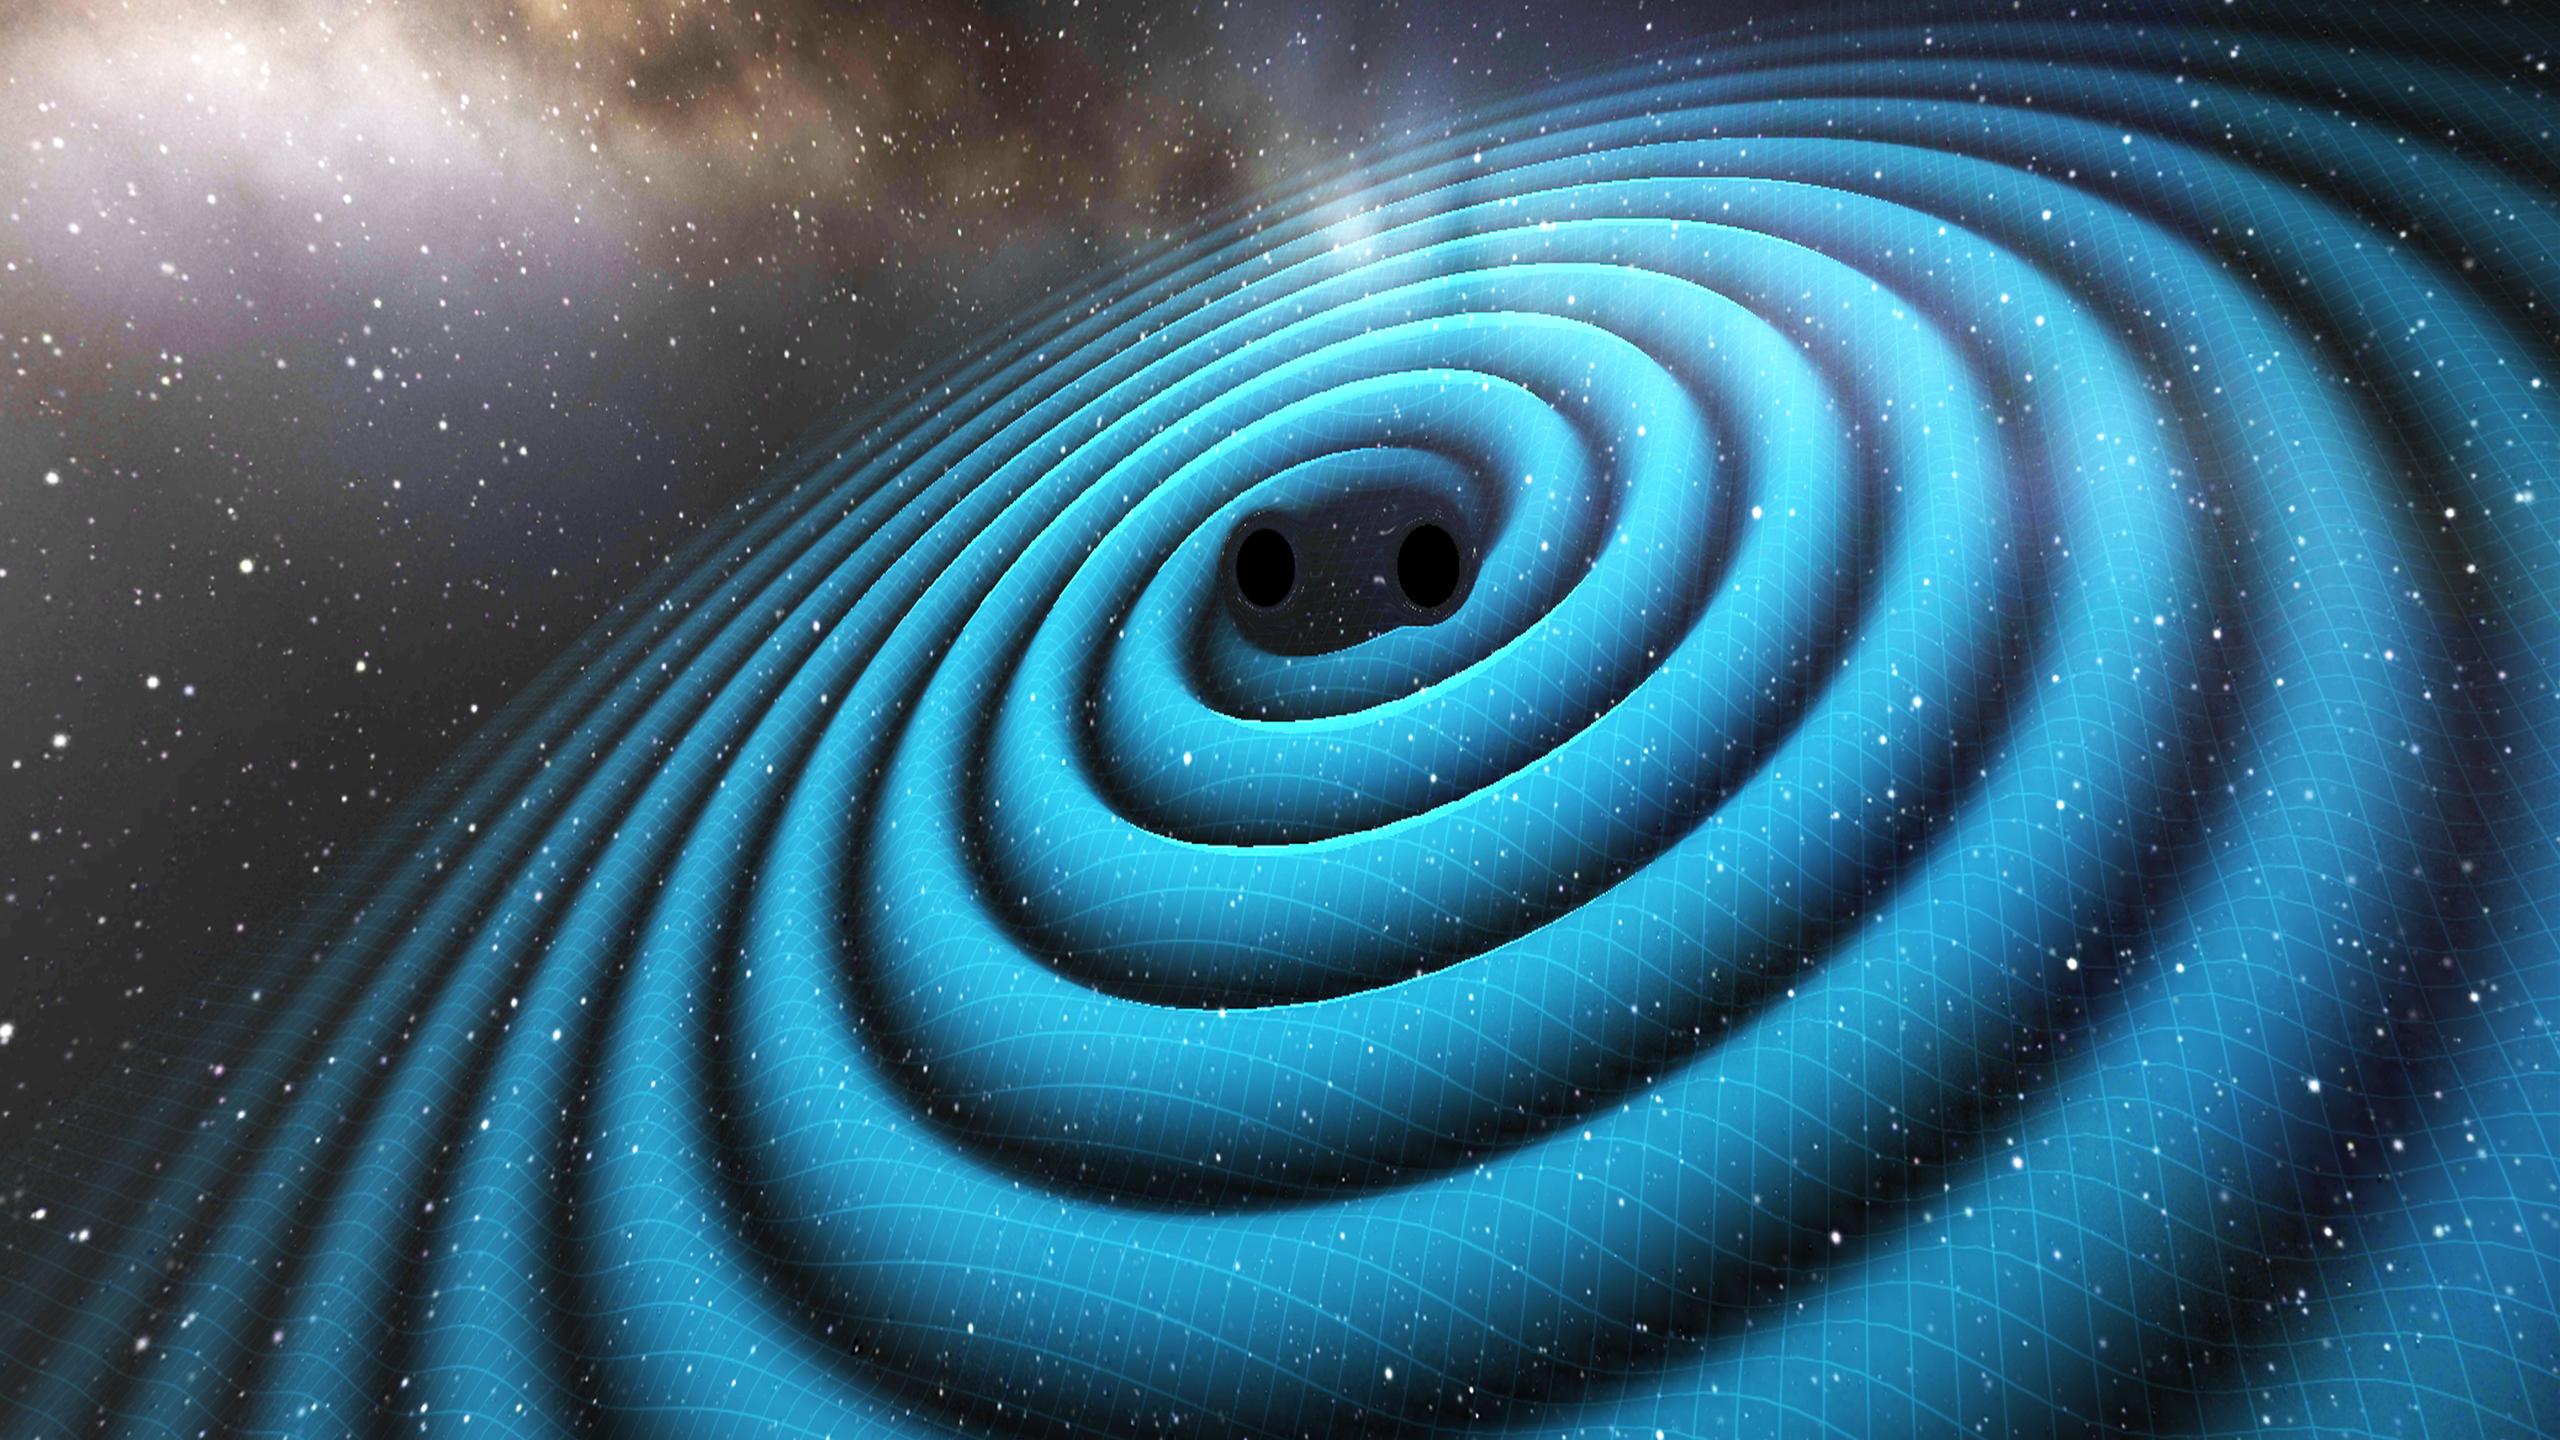 Black Hole Simulation 3d Live Wallpaper Image Num 2